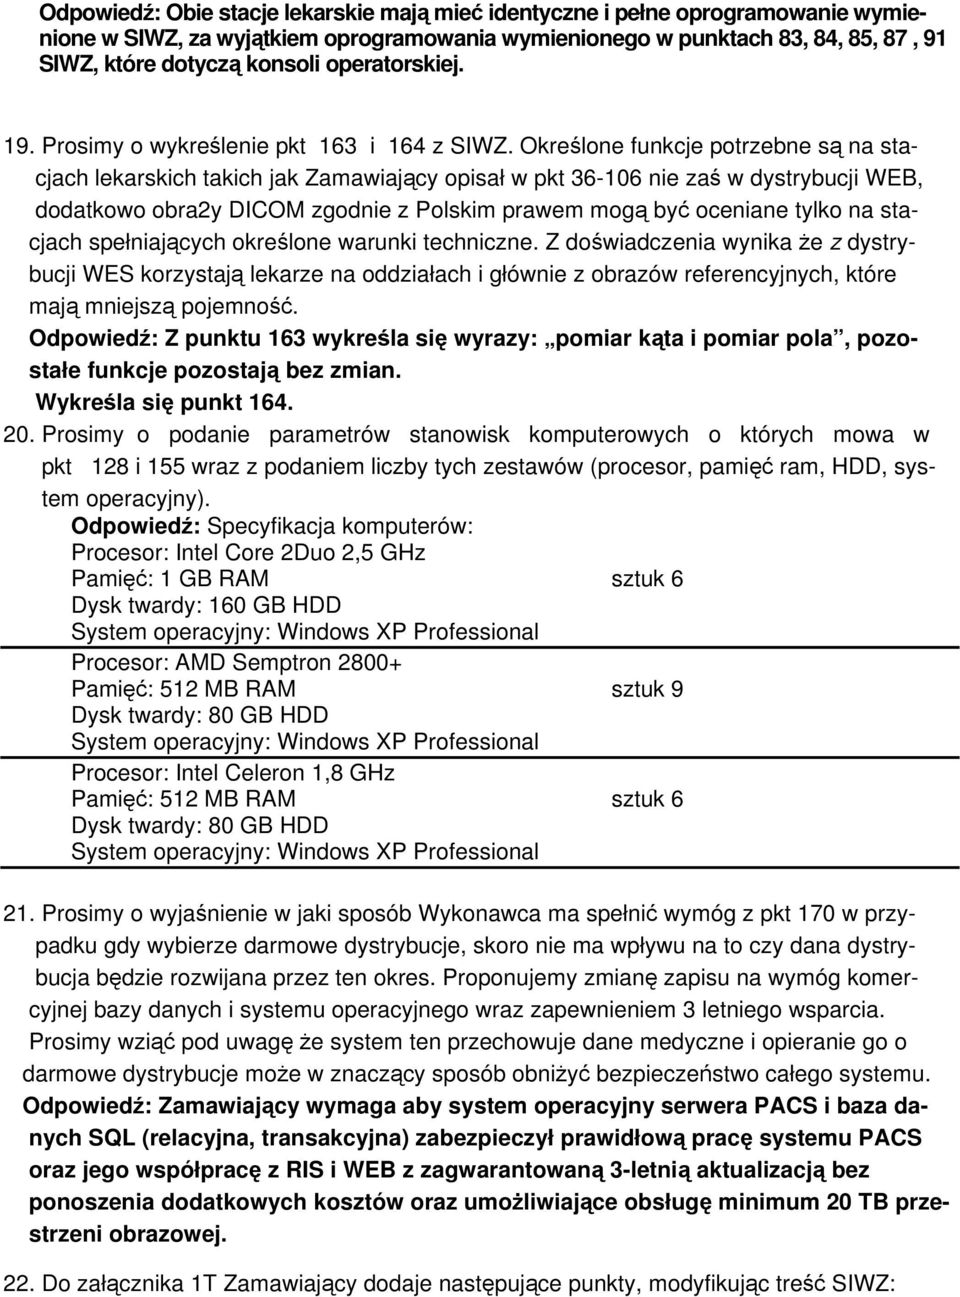 Określone funkcje potrzebne są na stacjach lekarskich takich jak Zamawiający opisał w pkt 36-106 nie zaś w dystrybucji WEB, dodatkowo obra2y DICOM zgodnie z Polskim prawem mogą być oceniane tylko na